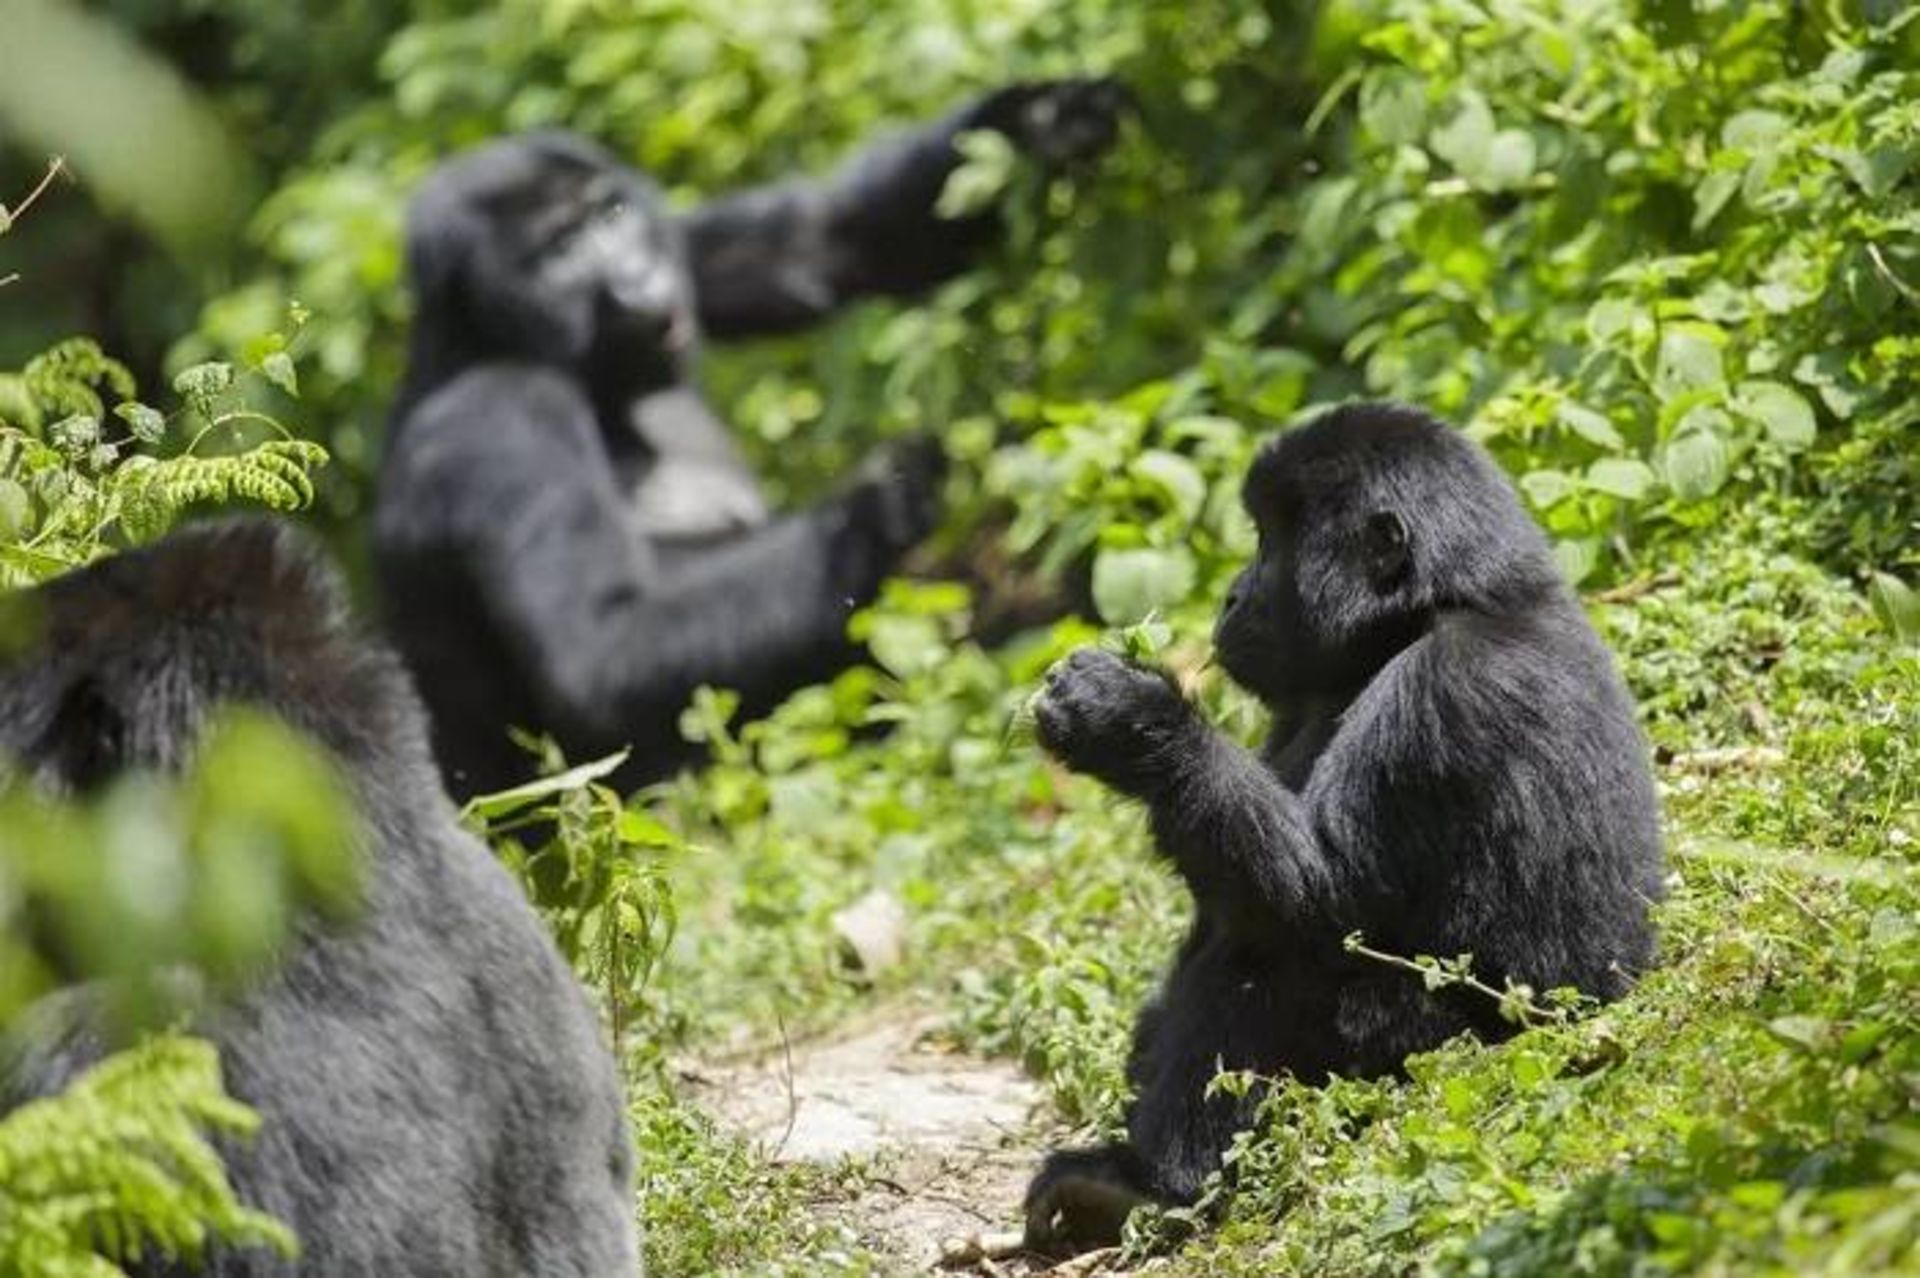 مرجع متخصصين ايران گوريل ها / Gorillas